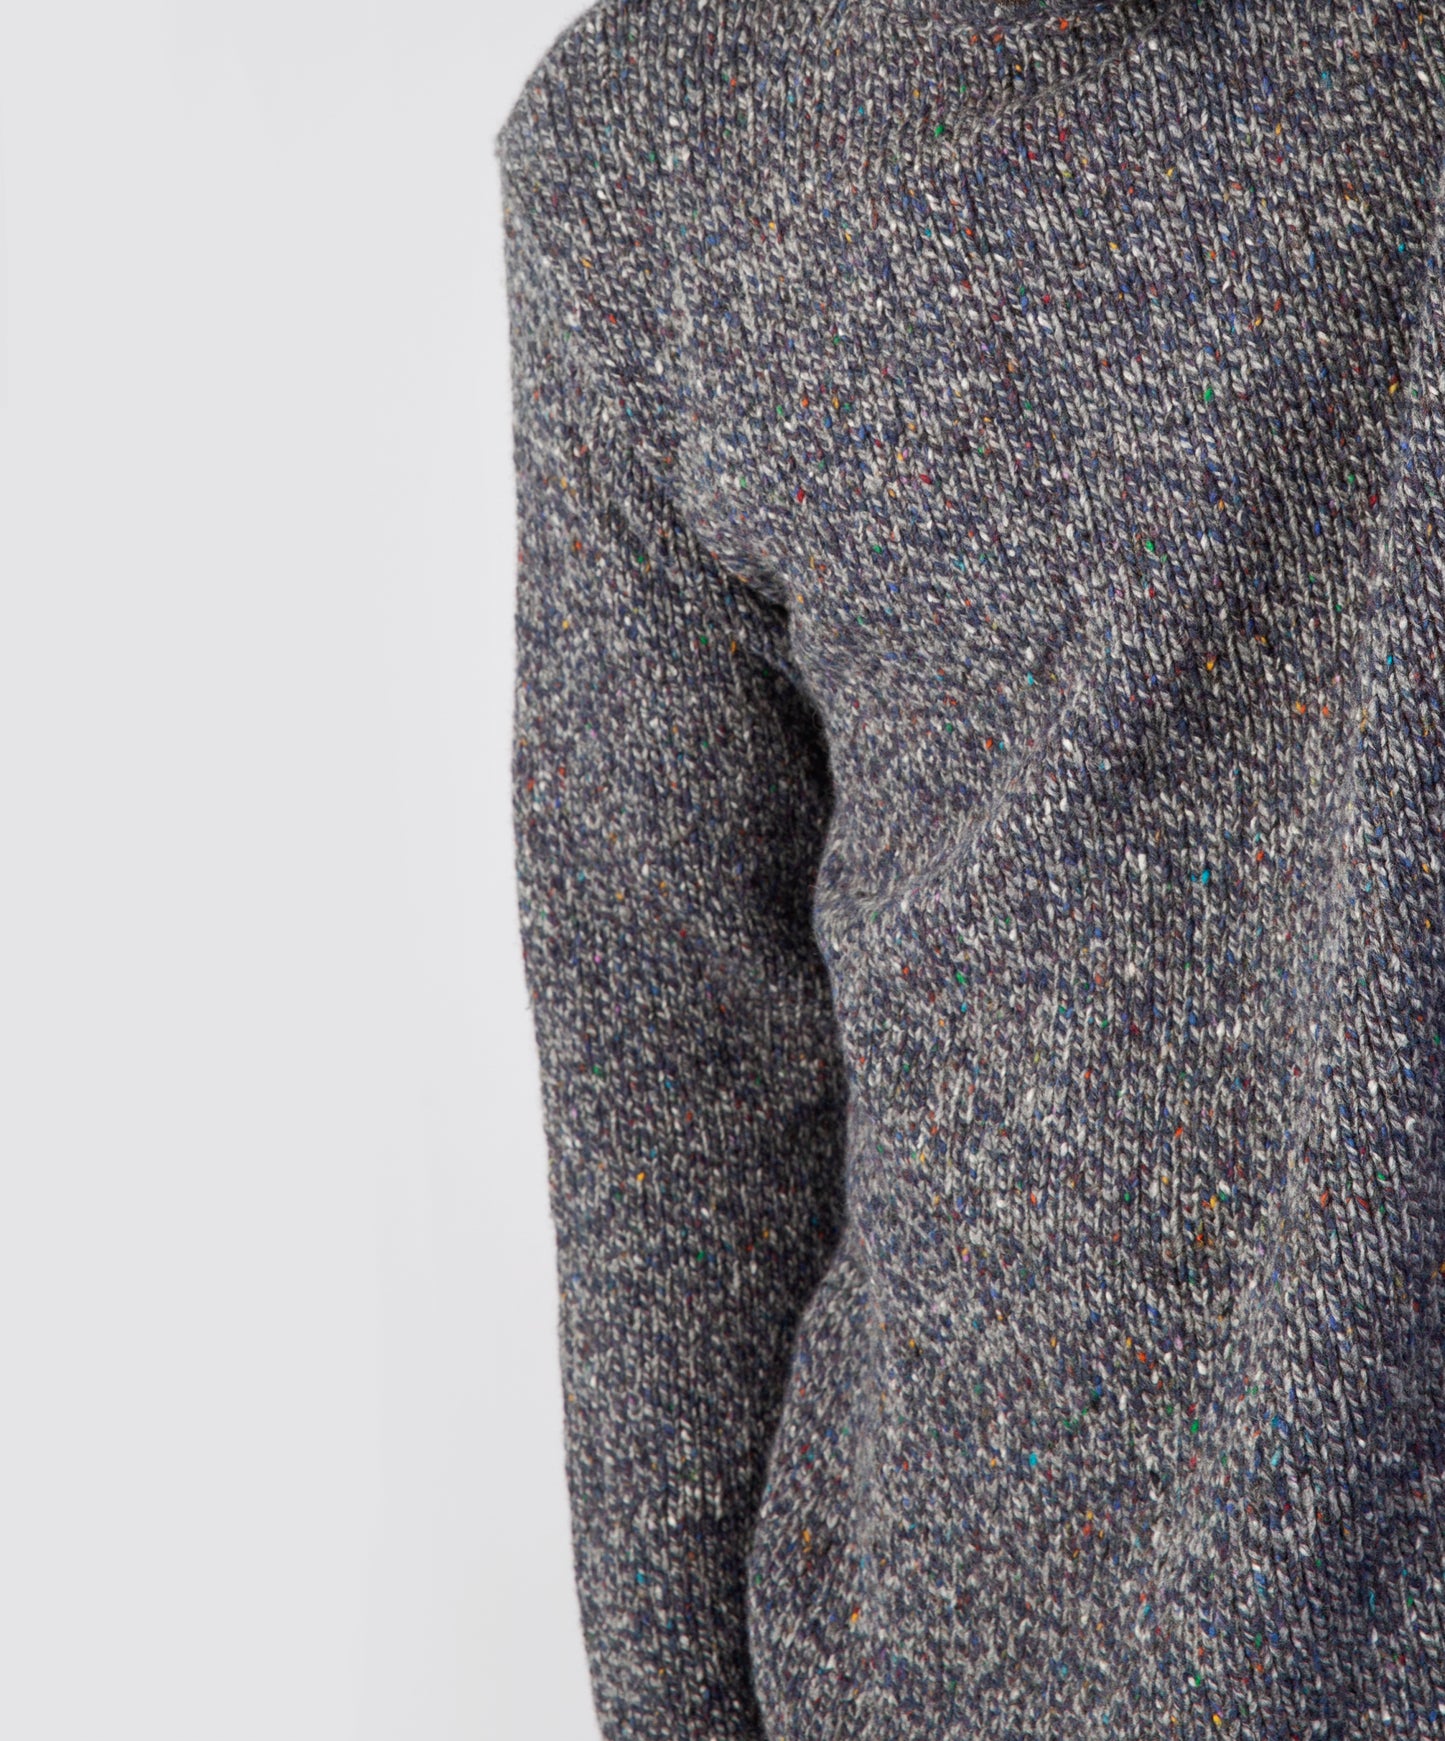 IrelandsEye Knitwear Roundstone Sweater Navy Marl